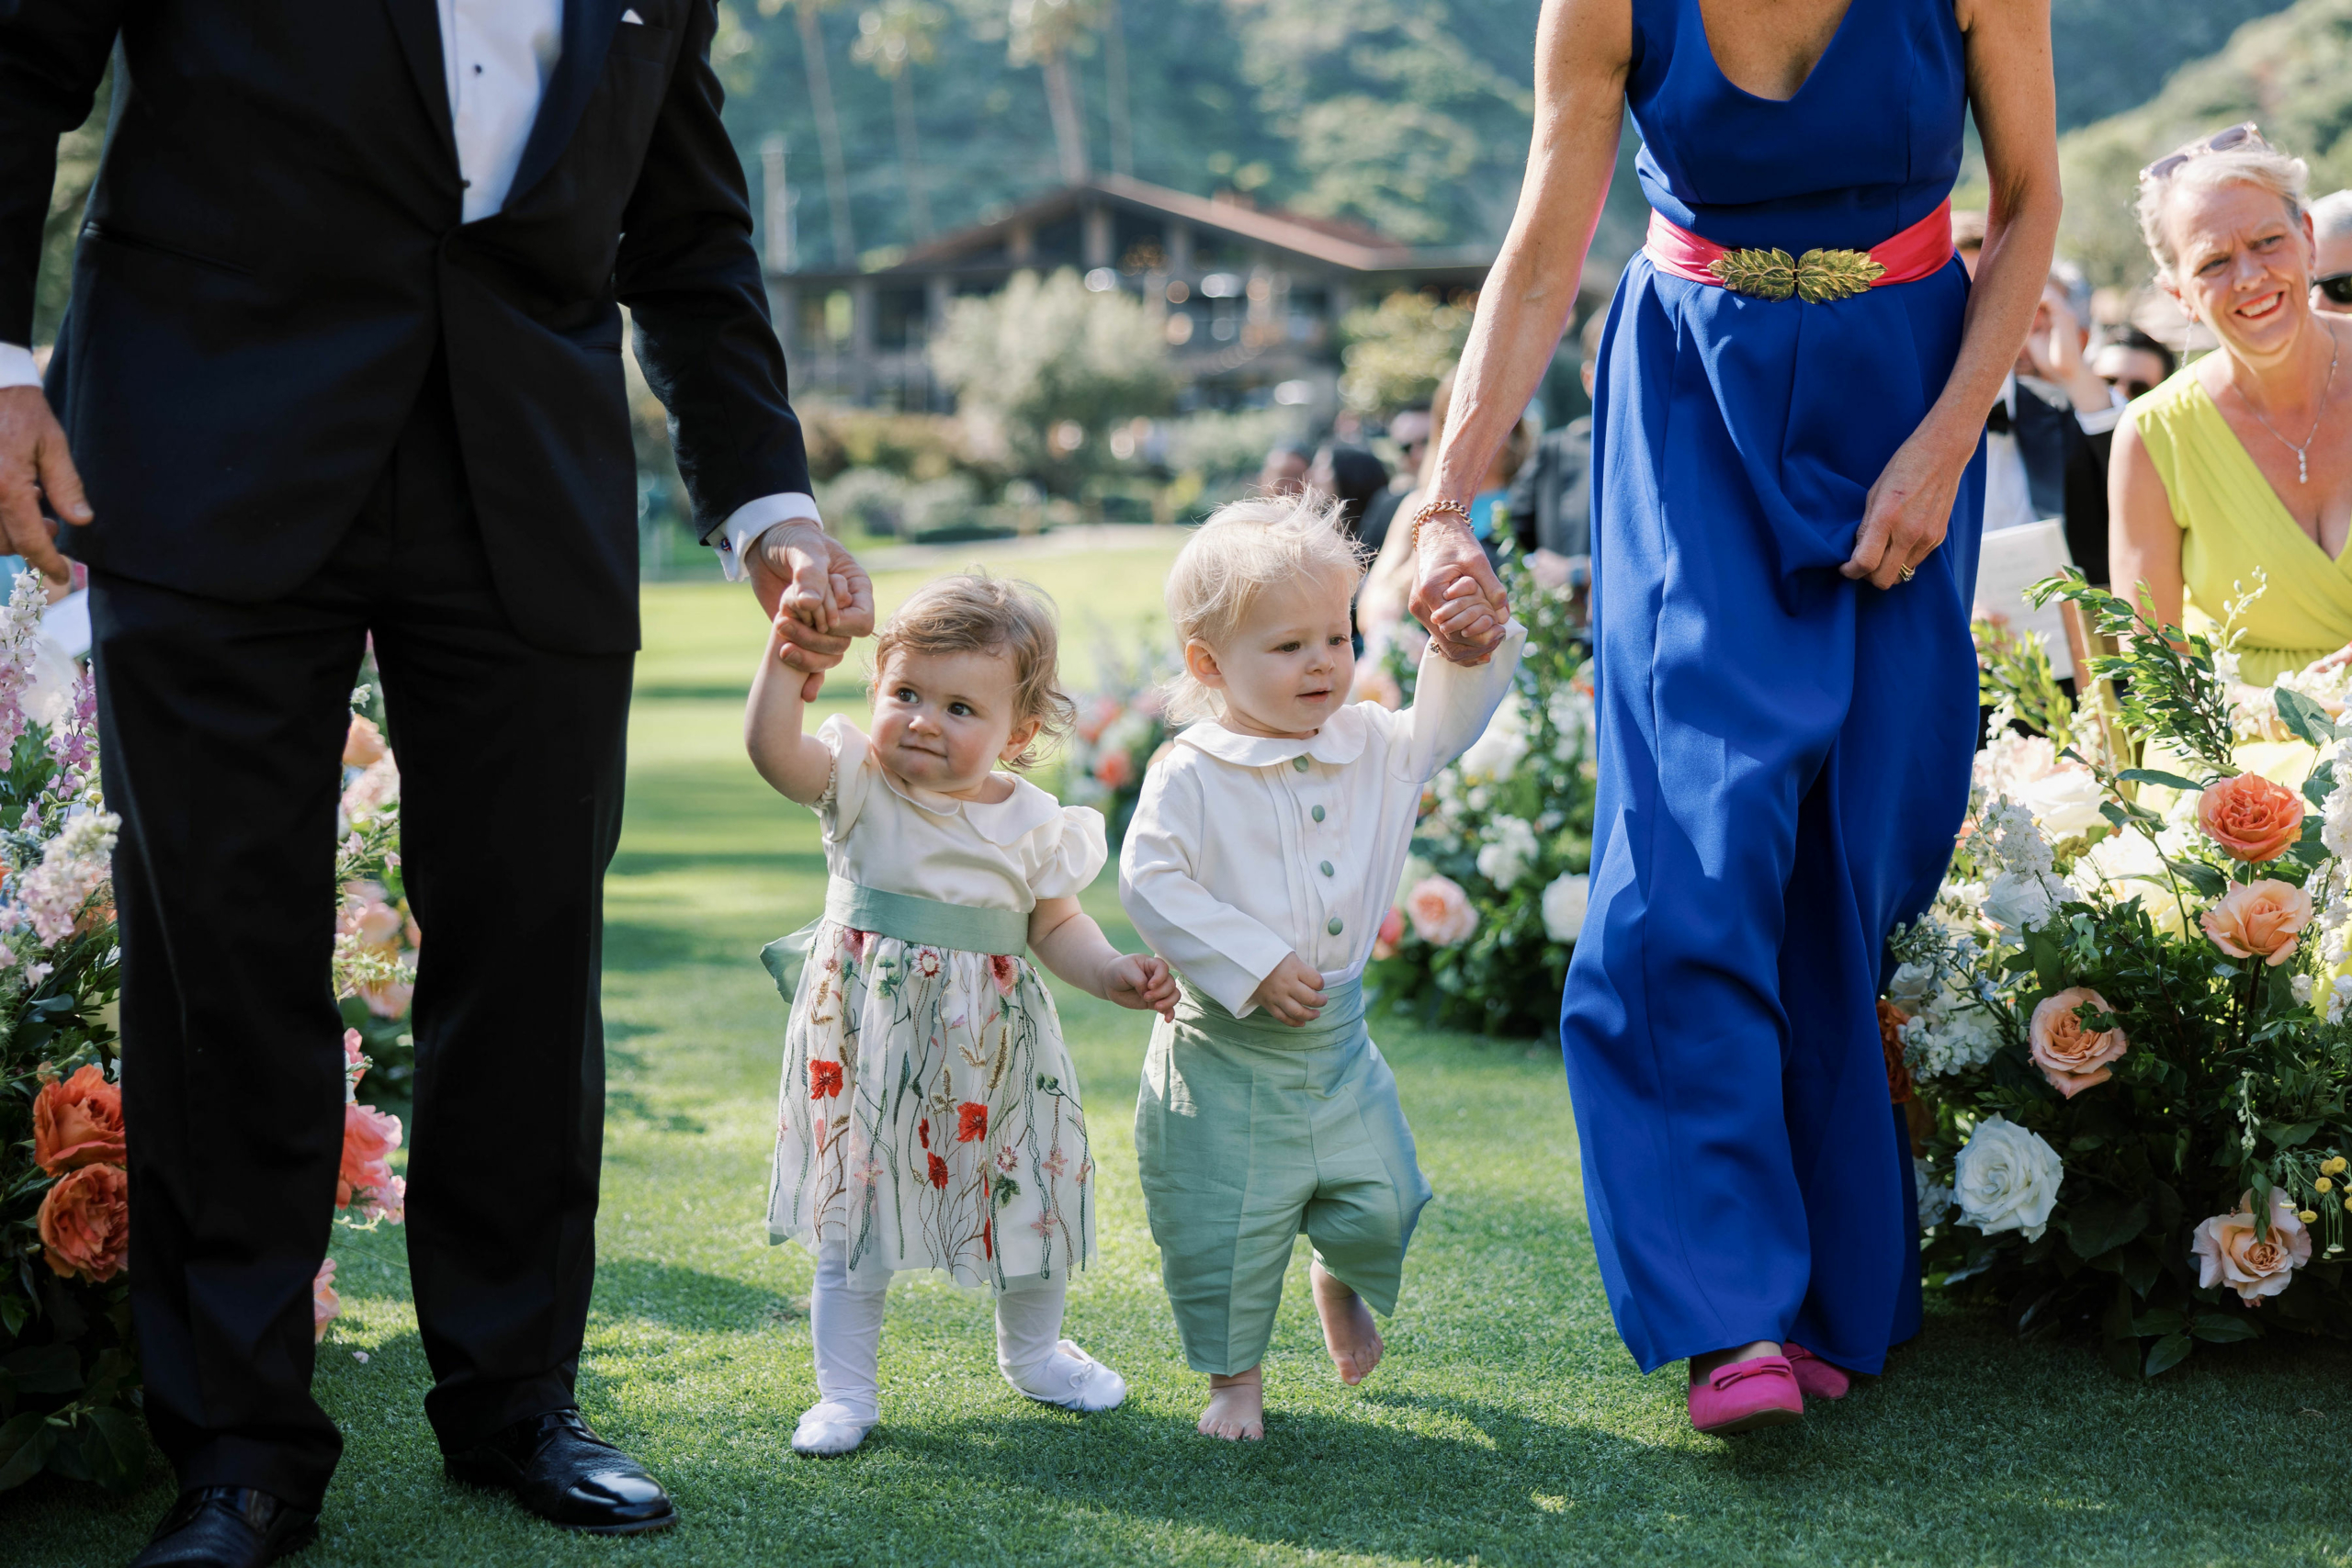 Bé gái cầm hoa và bé trai cầm nhẫn. (Ảnh: Đăng dưới sự cho phép của Jessica Rice Photography)